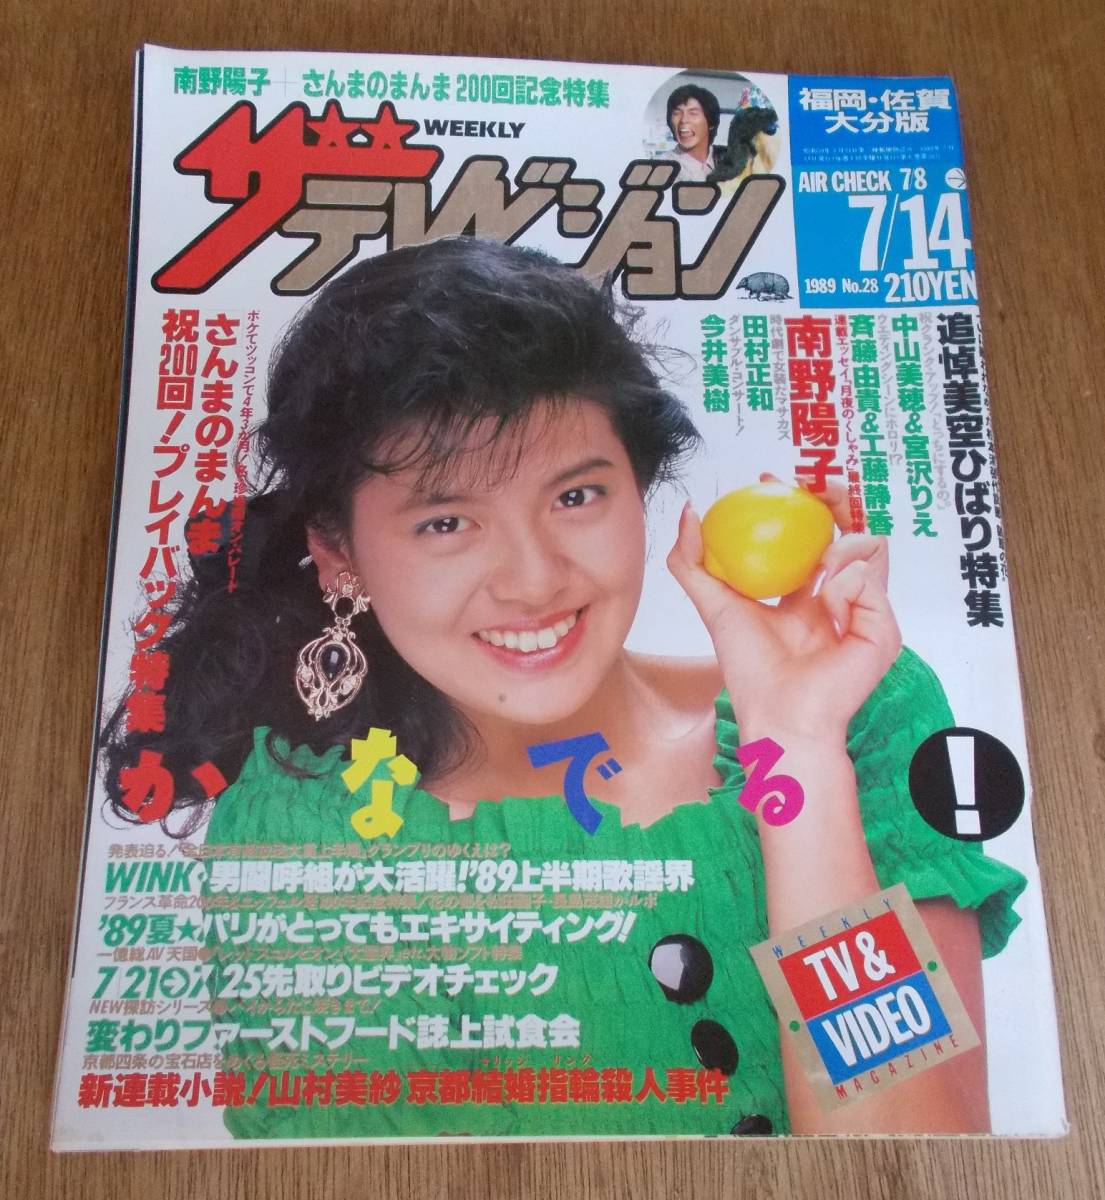 宅送] ザ・テレビジョン 追悼・美空ひばり特集 1989年 No.28(7/14号